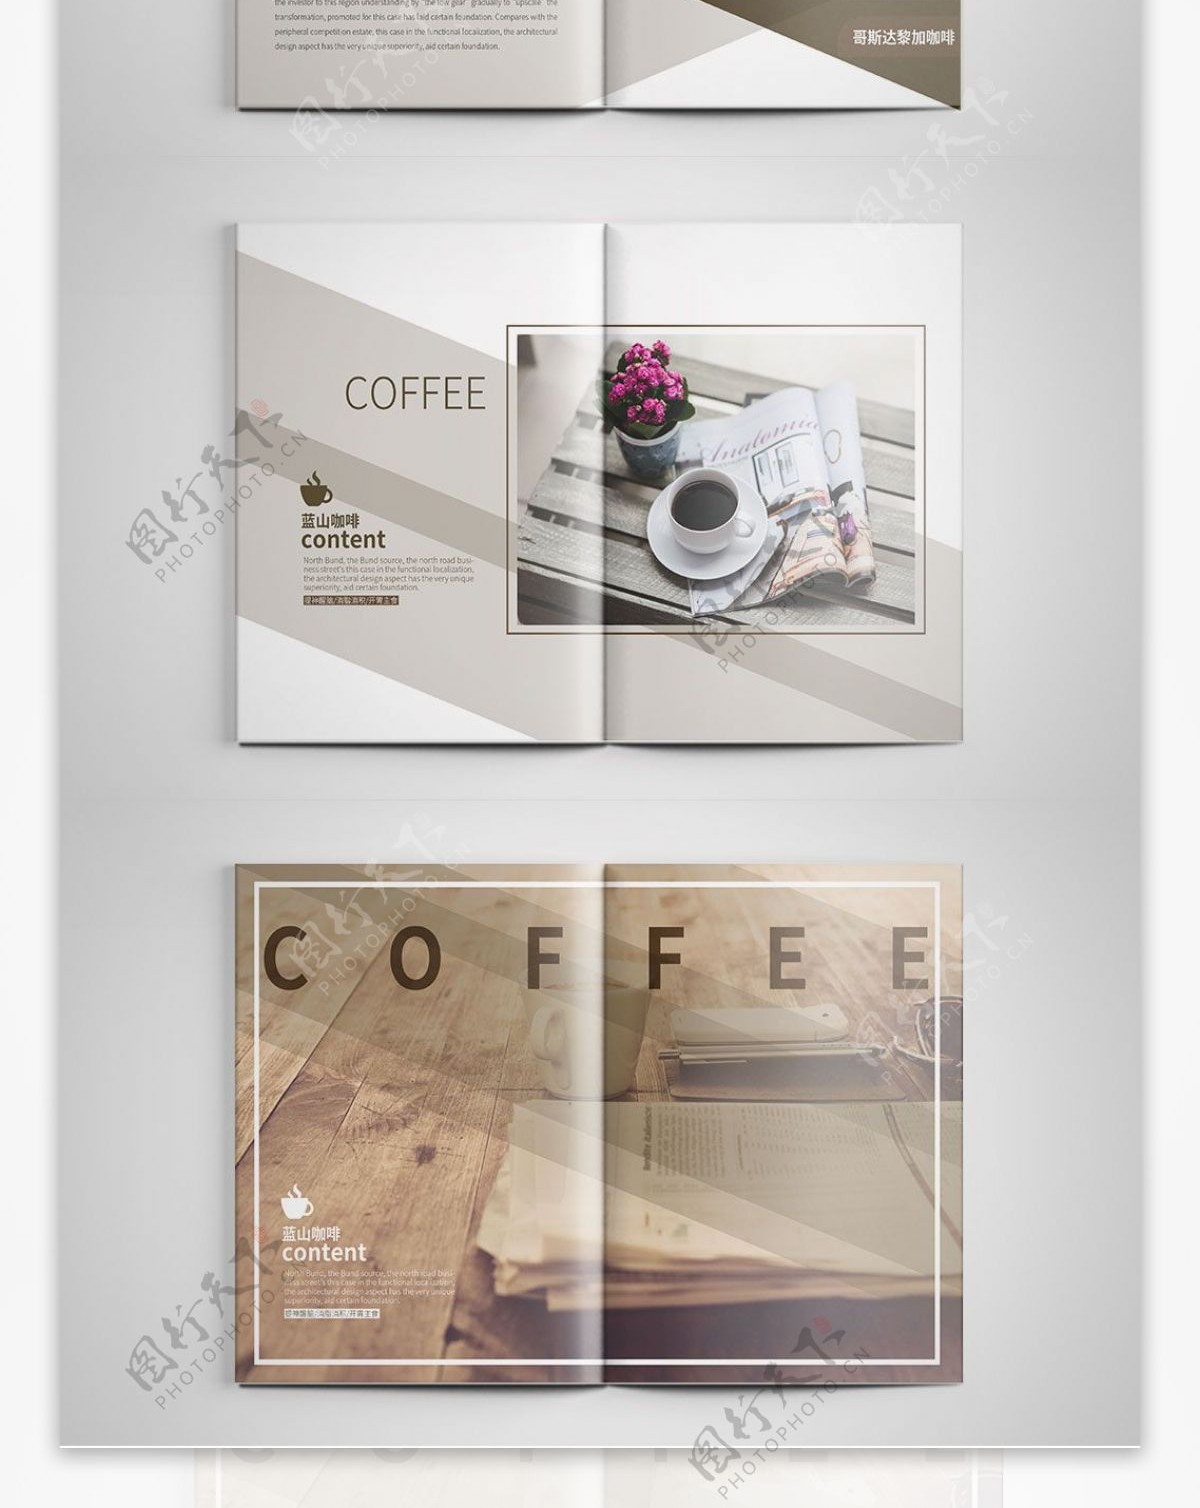 简约咖啡厅画册设计PSD模板